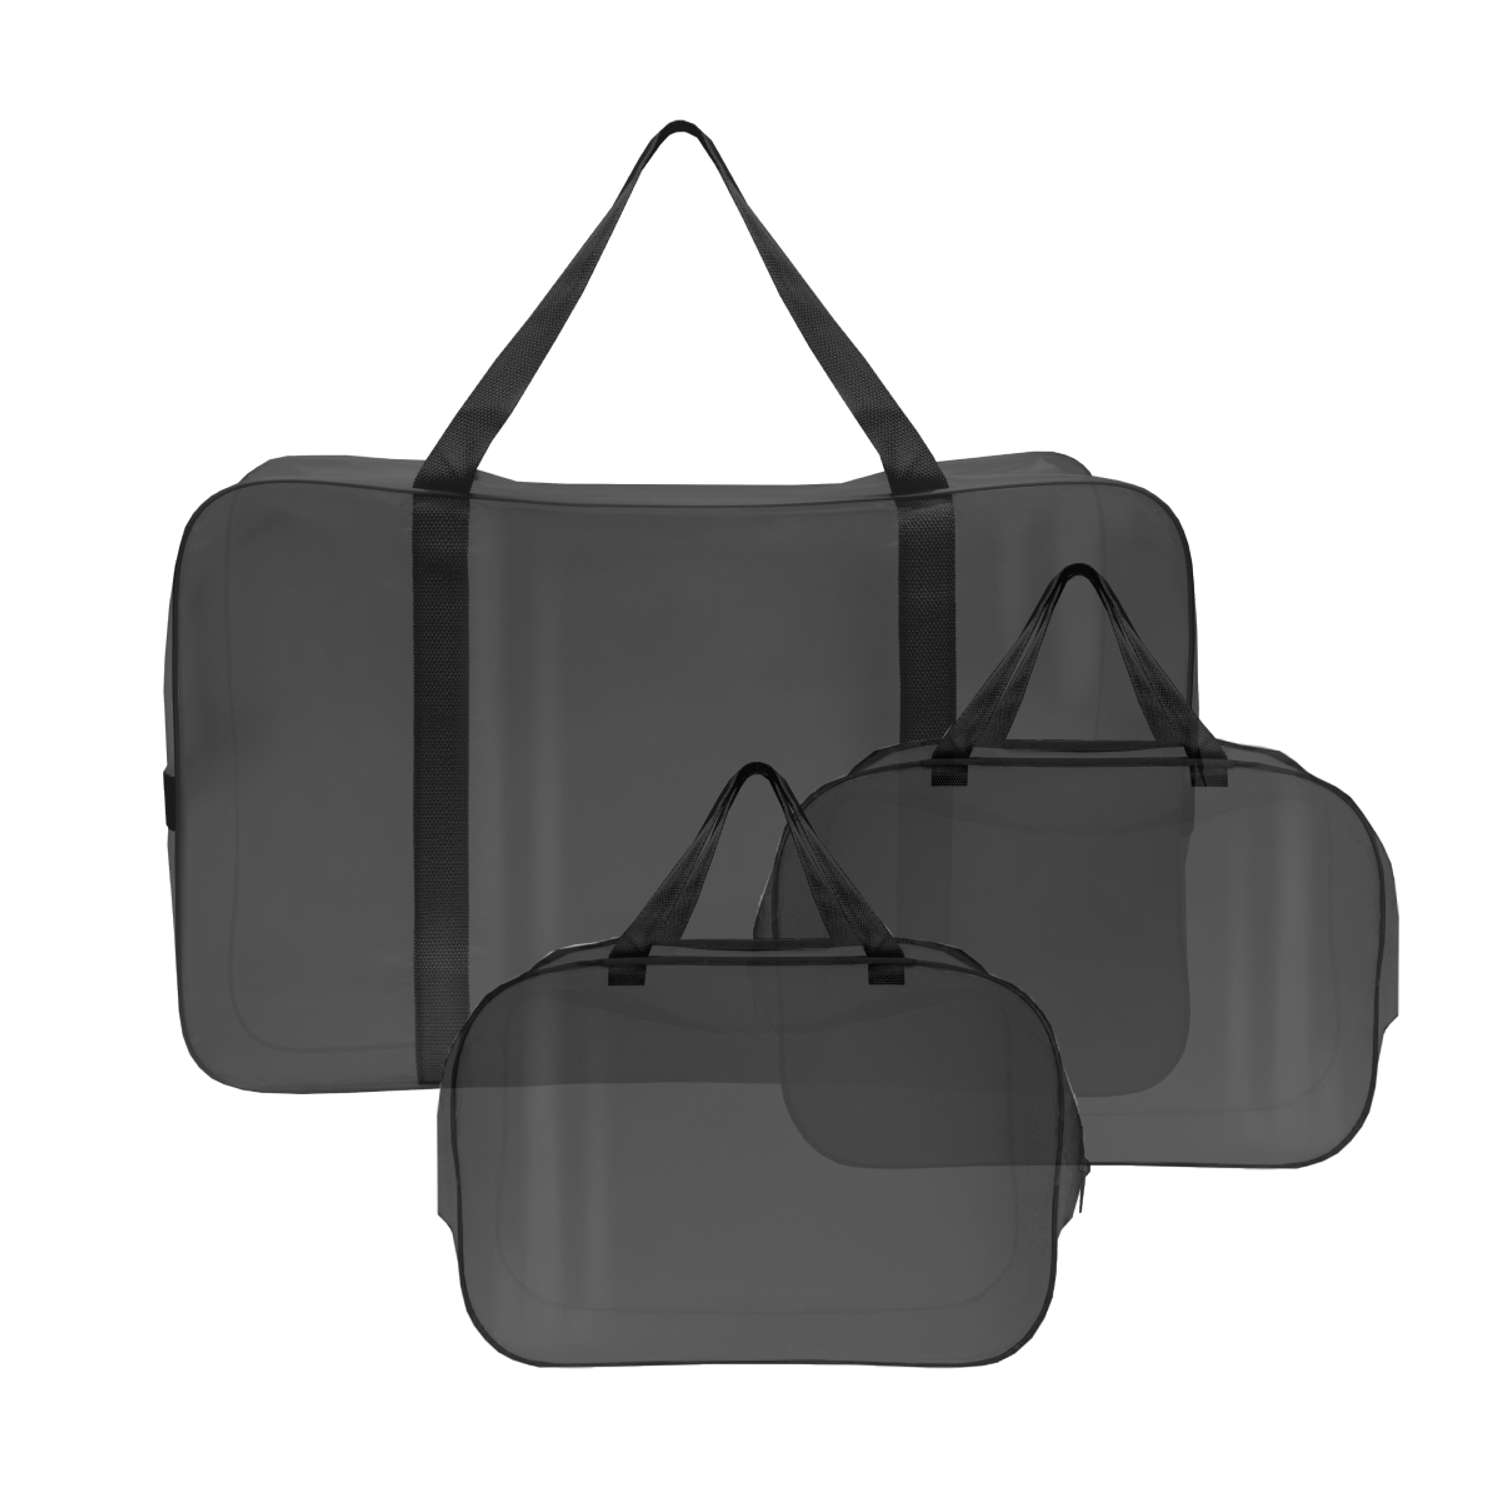 Набор для роддома ForBaby прозрачные сумки 3 шт - черный цвет - фото 1